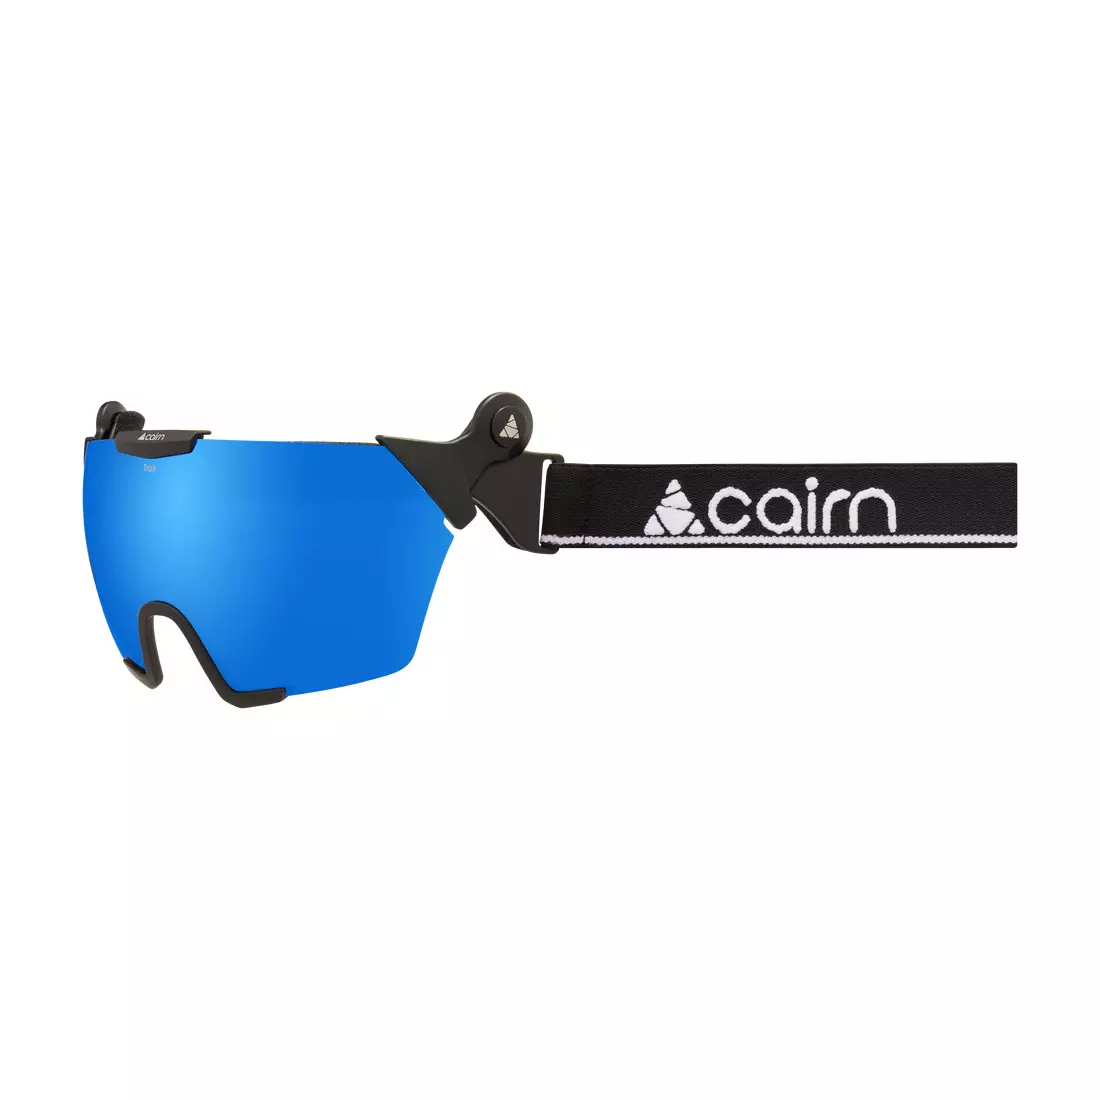 CAIRN Trak SPX 3000 ochelari de schi/snowboard, oglinda neagra/albastra